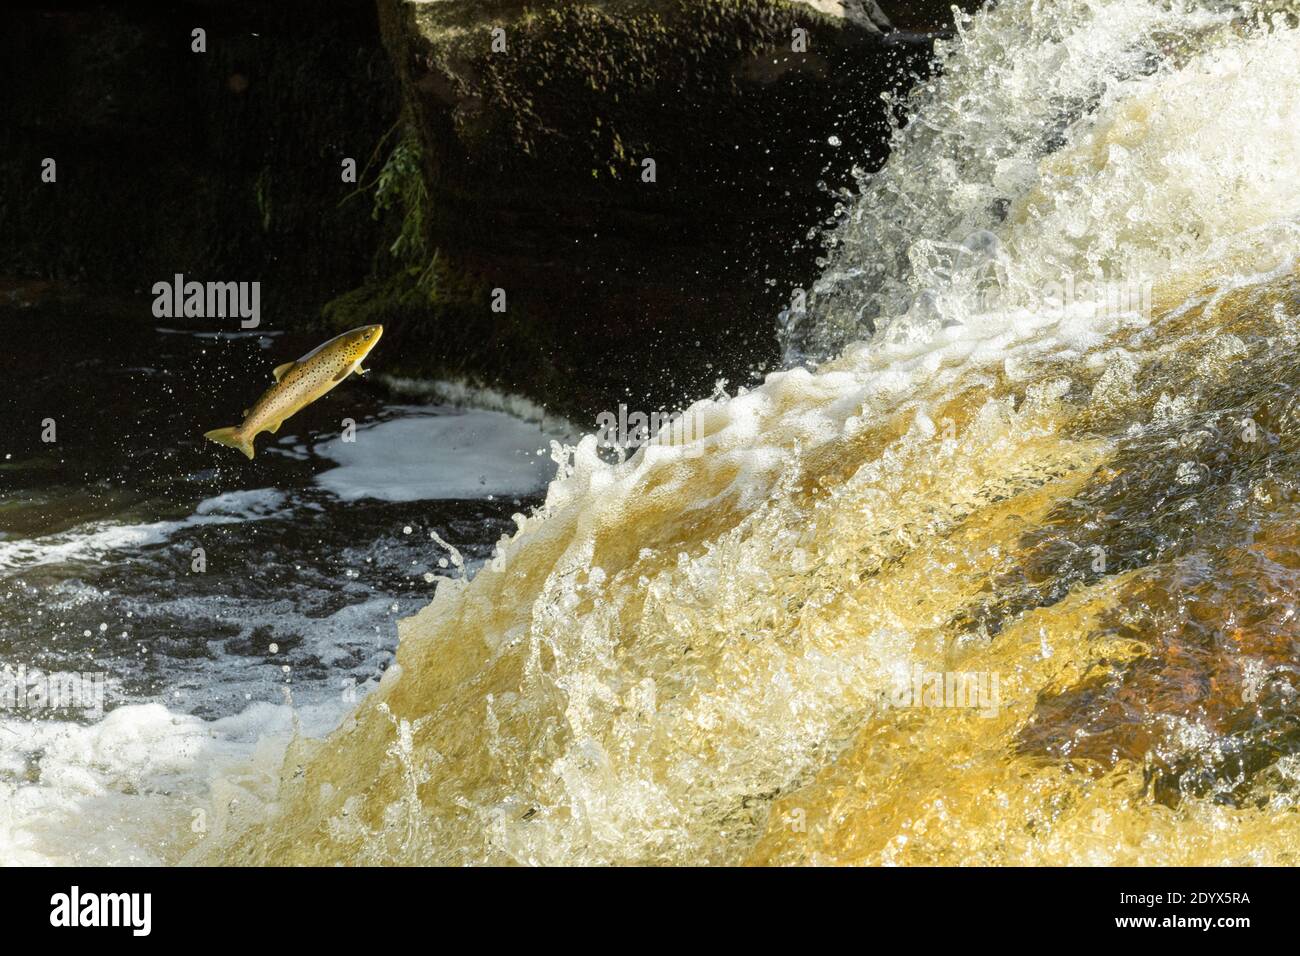 La truite brune (Salmo trutta) bondissant une cascade pour se rendre aux frayères en amont. Rivière Endrick, parc national de Trossachs, Écosse Banque D'Images